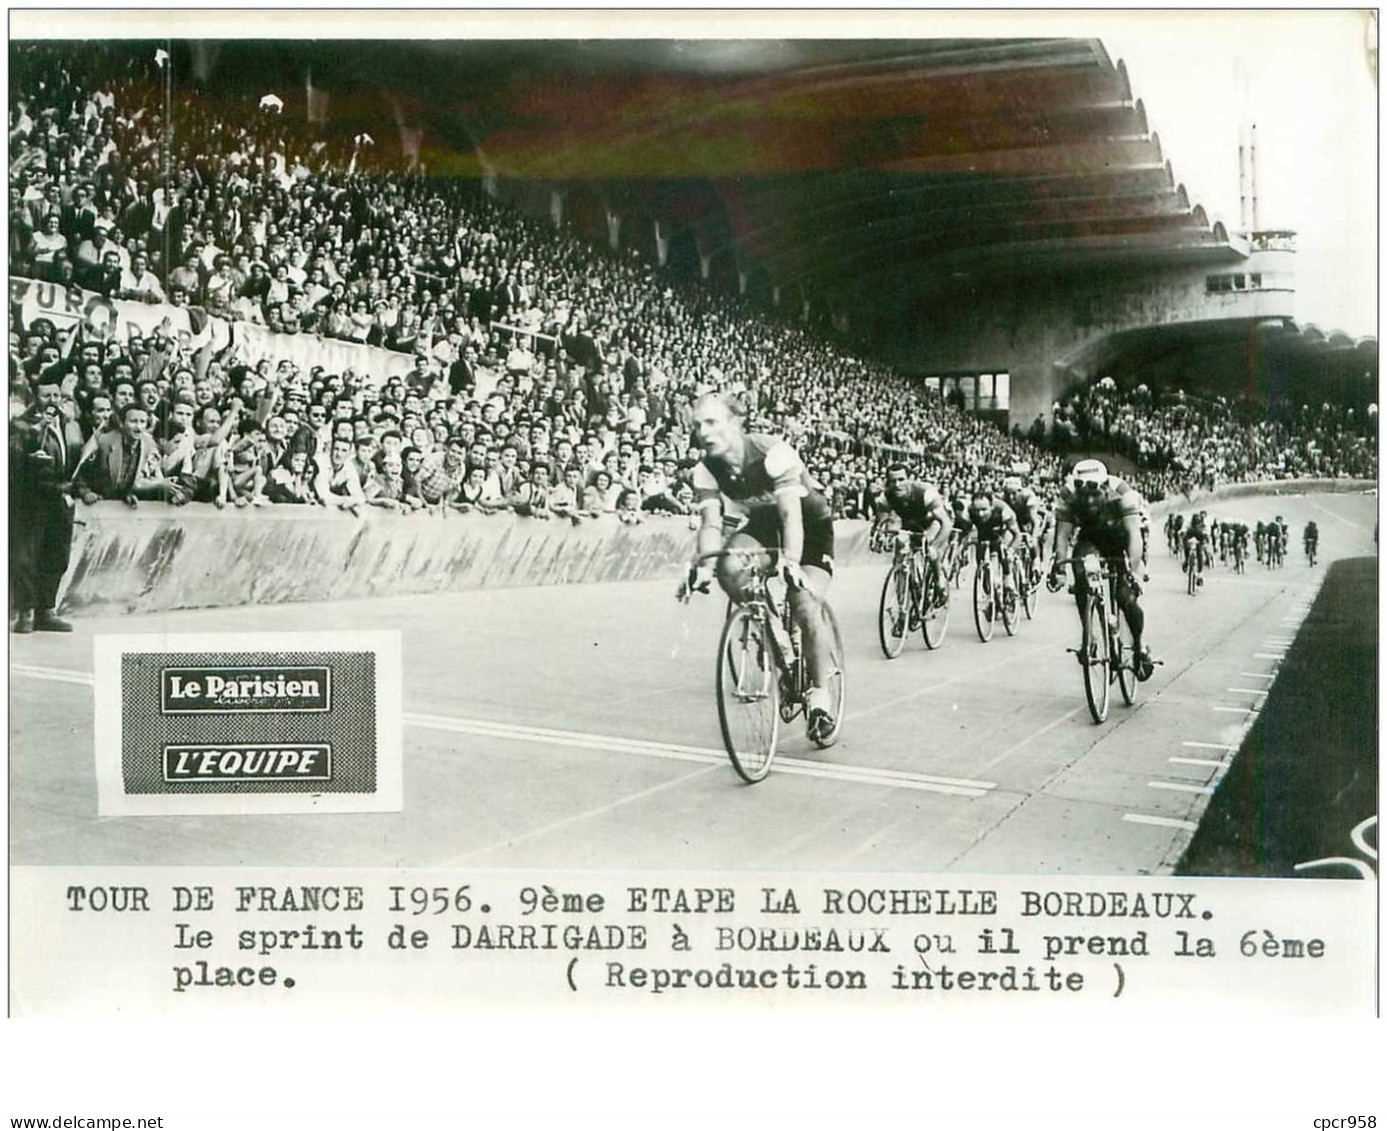 PHOTO DE PRESSE ORIGINALE TOUR DE FRANCE 1956.20X15.9eme ETAPE LA ROCHELLE BORDEAUX.LE SRINT DE DARRIGADE.n°18669 - Cyclisme